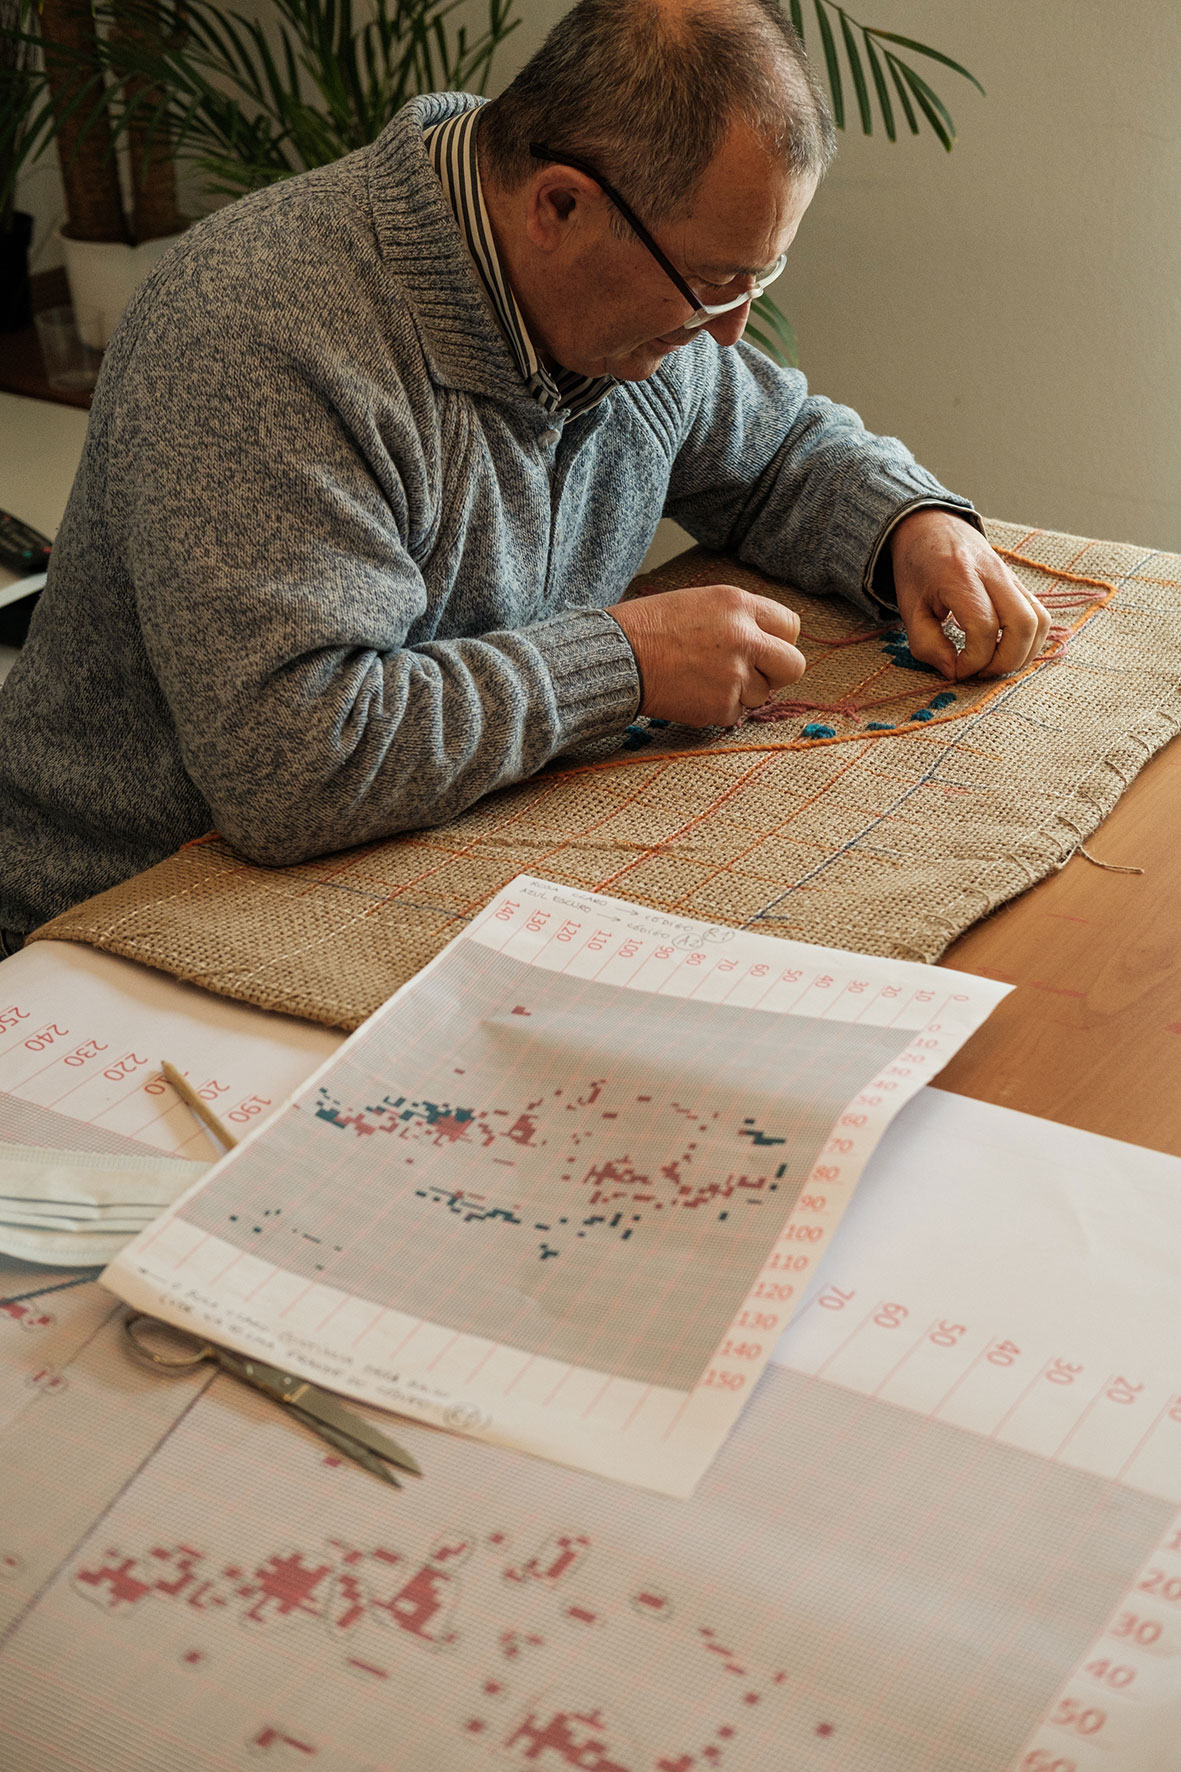 Pai da artista sentado, borda fio cor de laranja numa tela de serapilheira. Ao seu lado, folhas de planeamento e esboço.